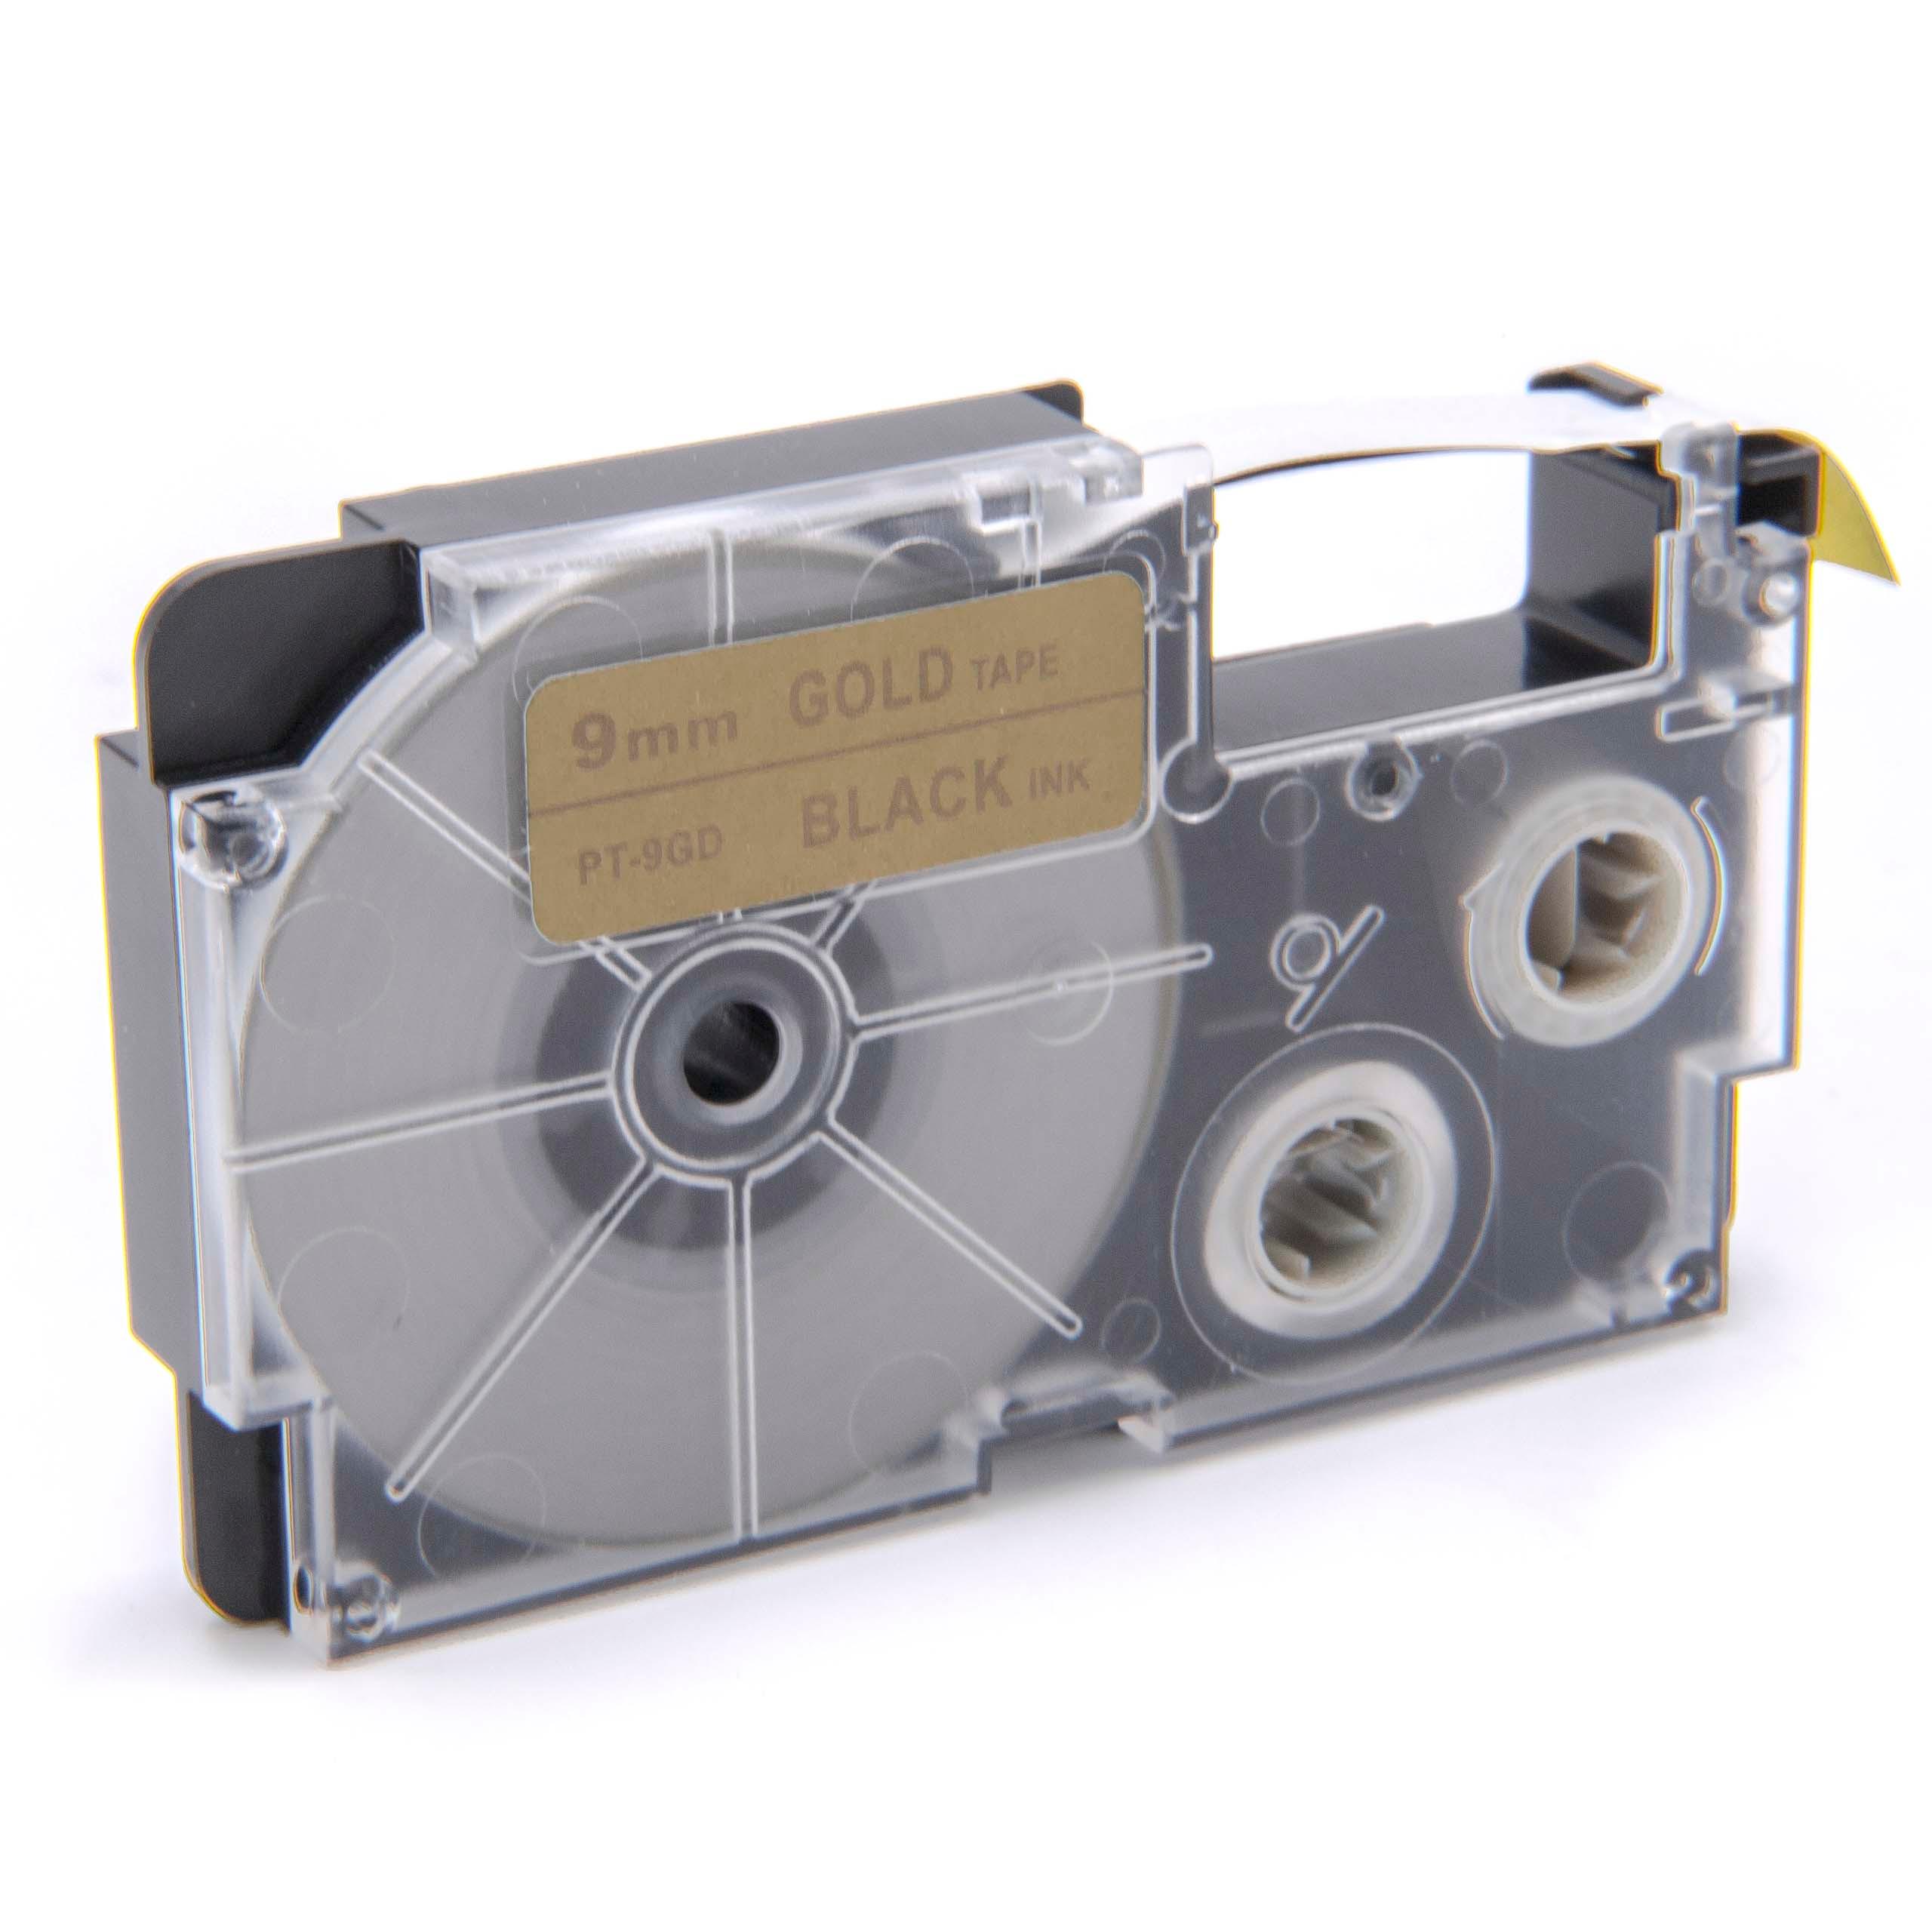 Cassetta nastro sostituisce Casio XR-9GD1 per etichettatrice Casio 9mm nero su dorato